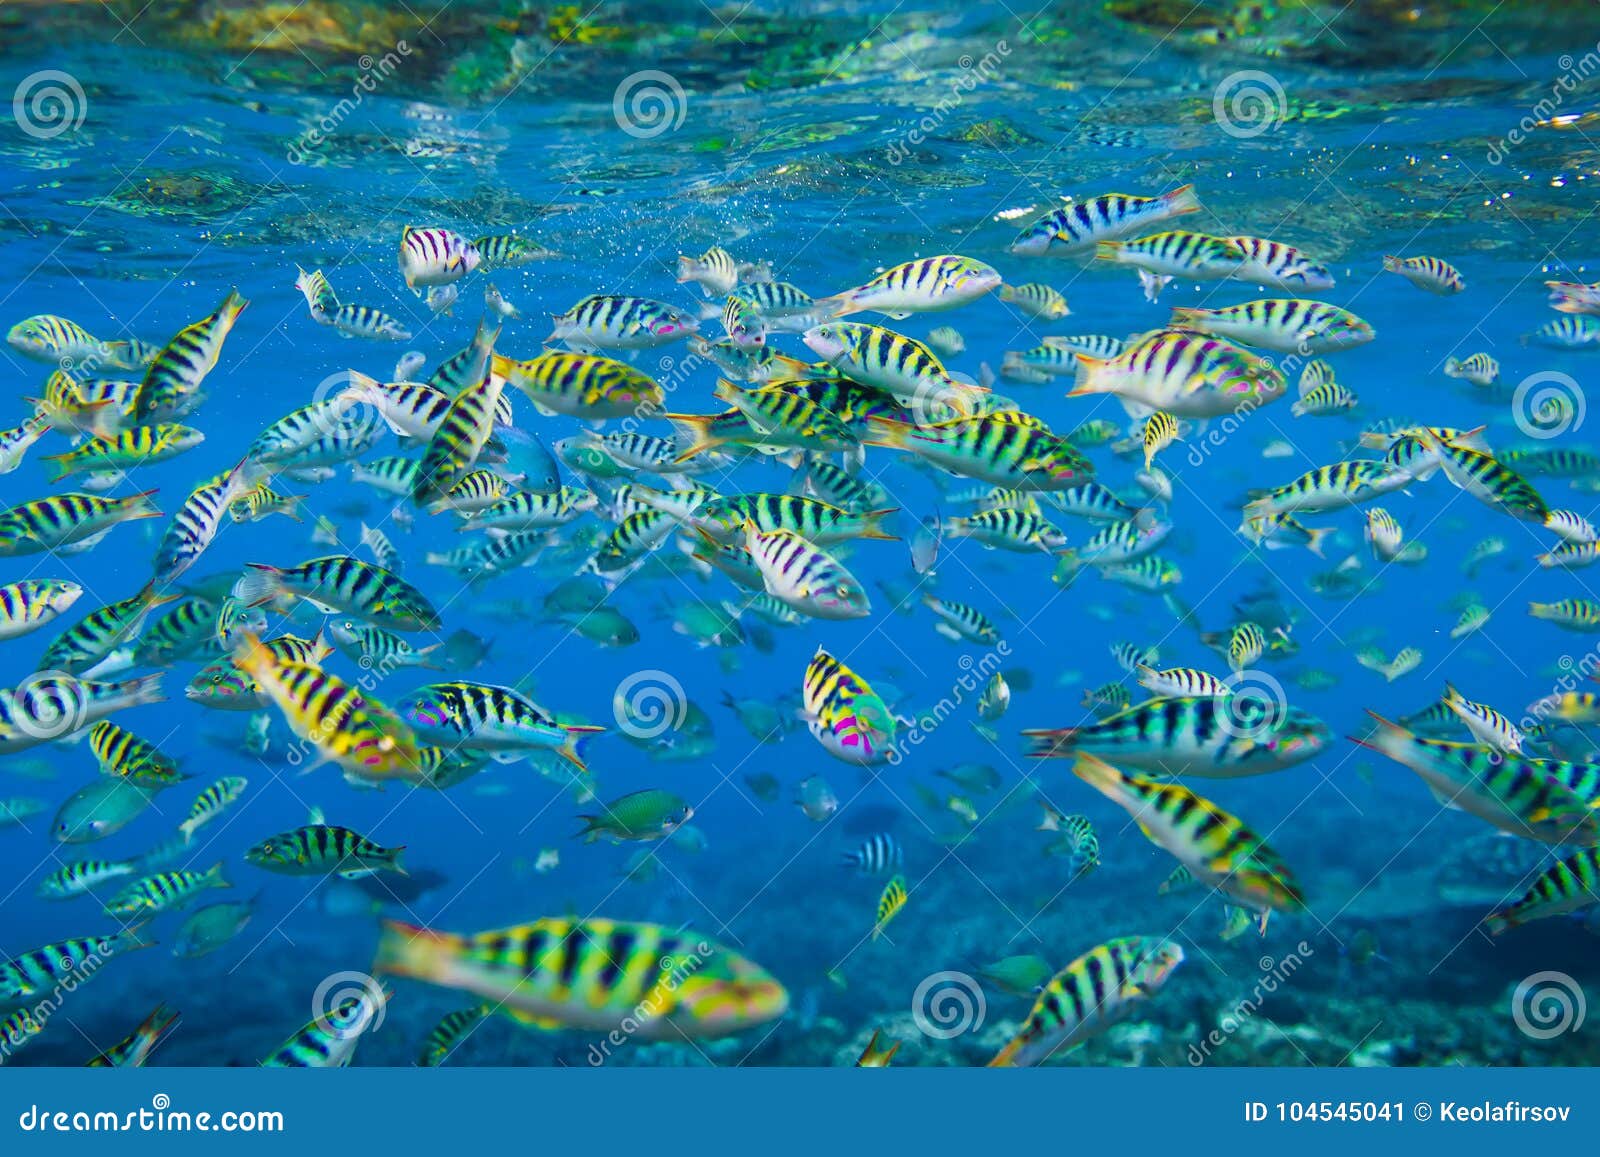 Рыбы В Океане Фото